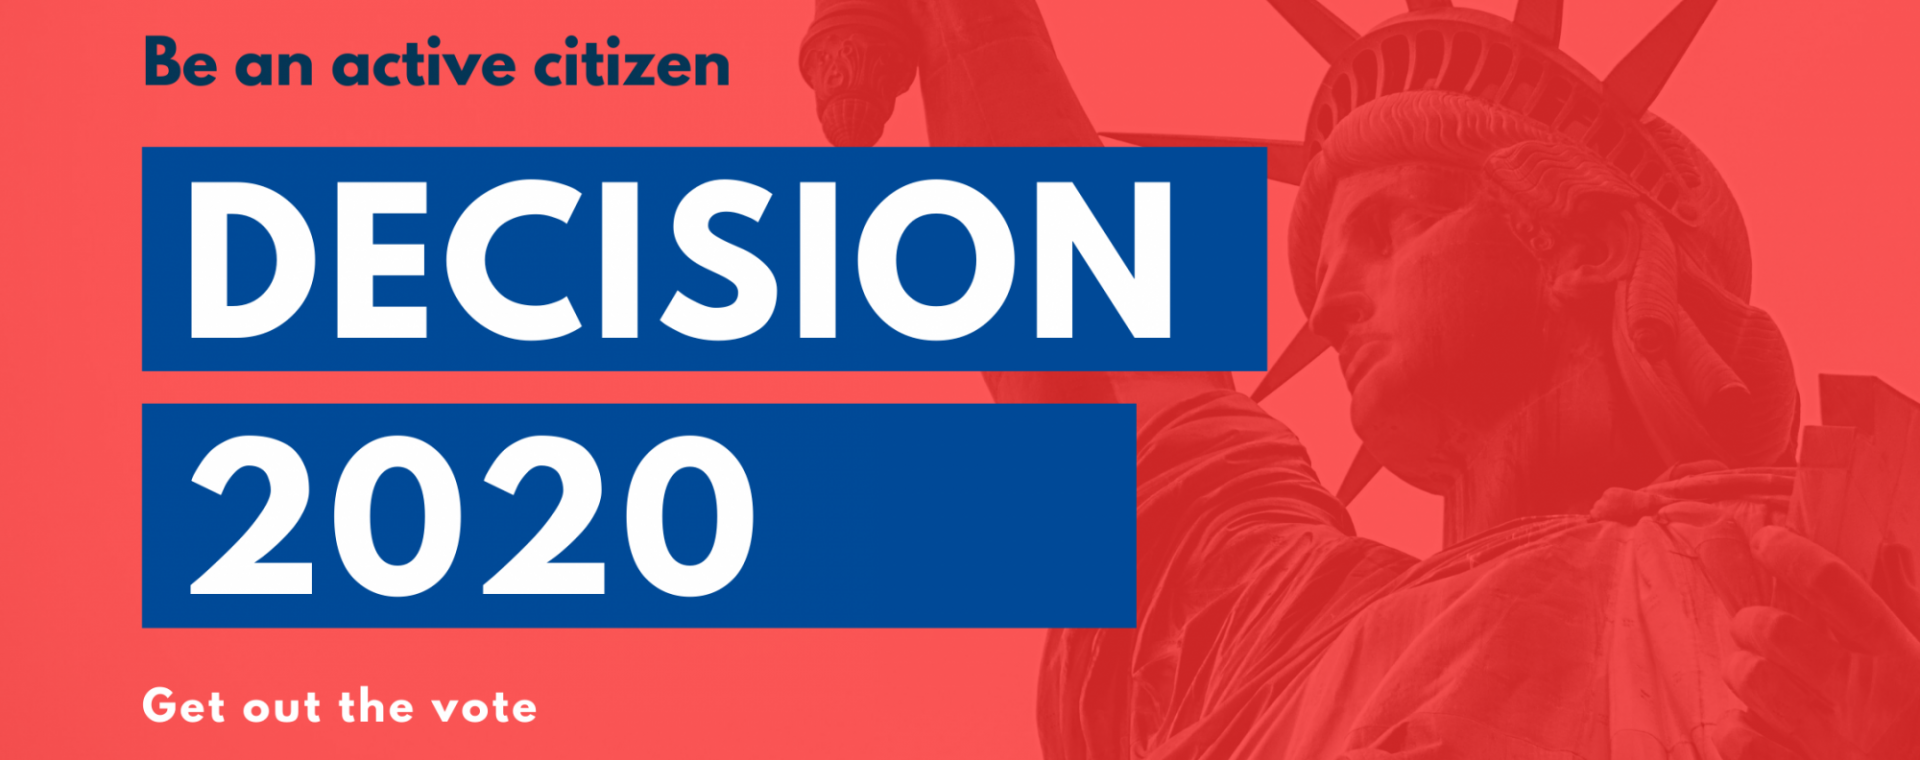 Decision 2020: be an active citizen